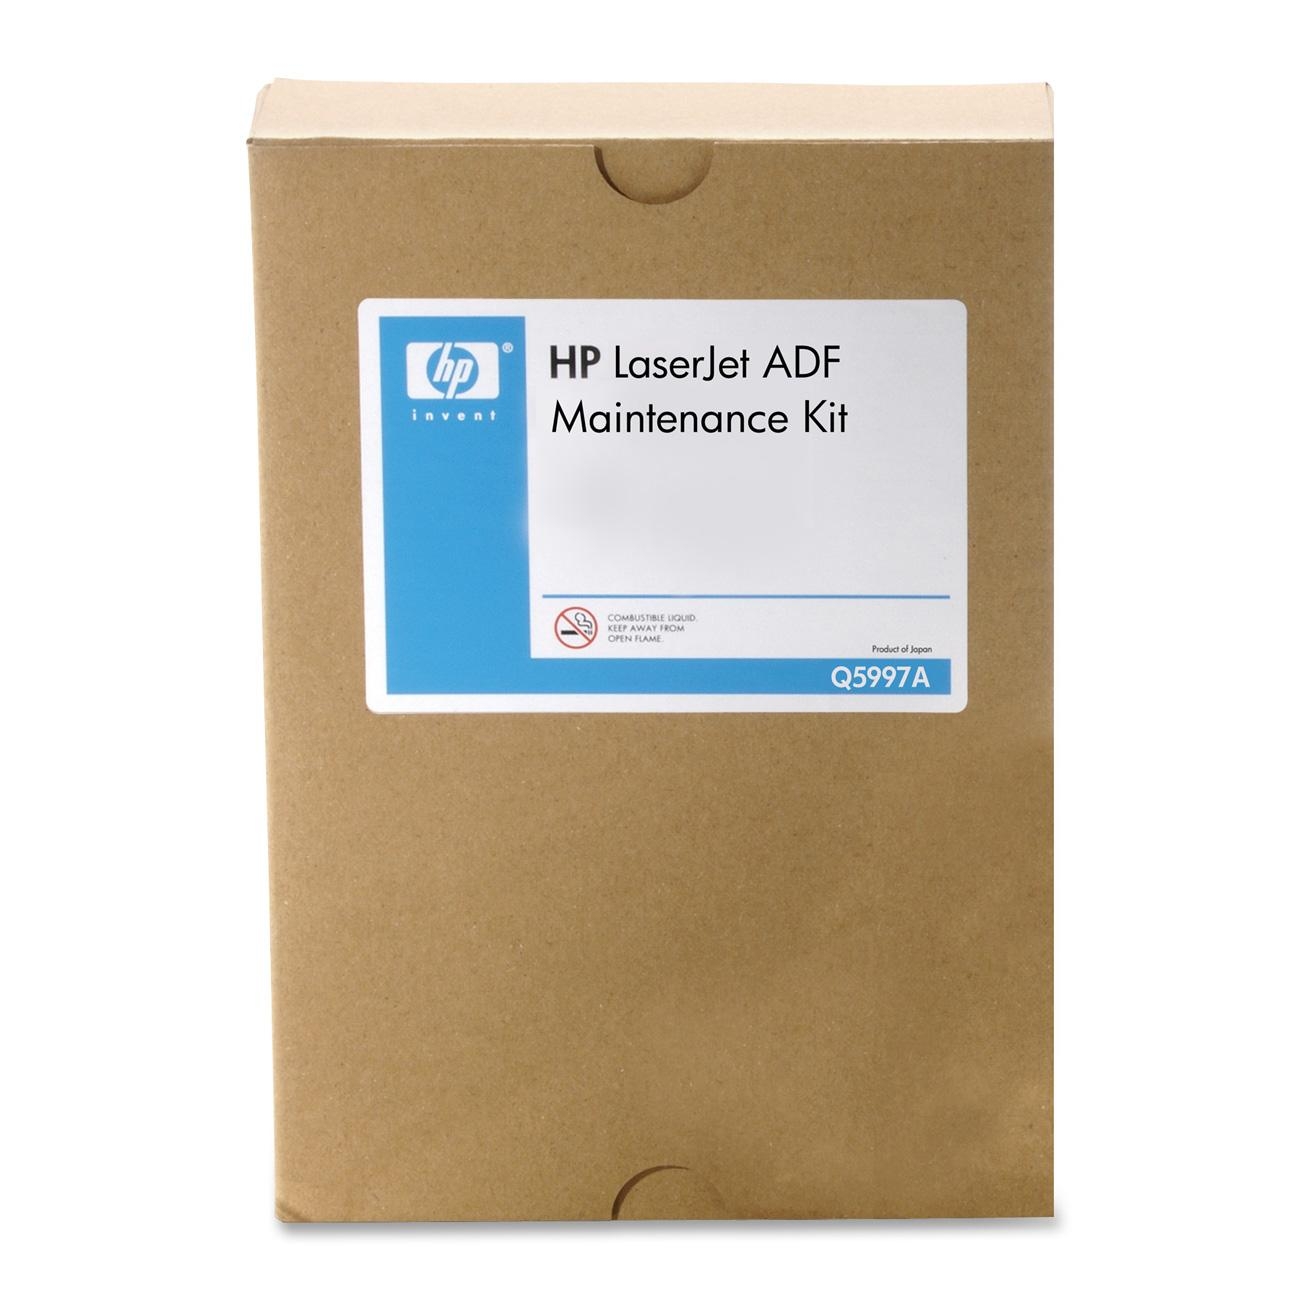 HP LaserJet ADF Maintenance Kit(Q5997A)